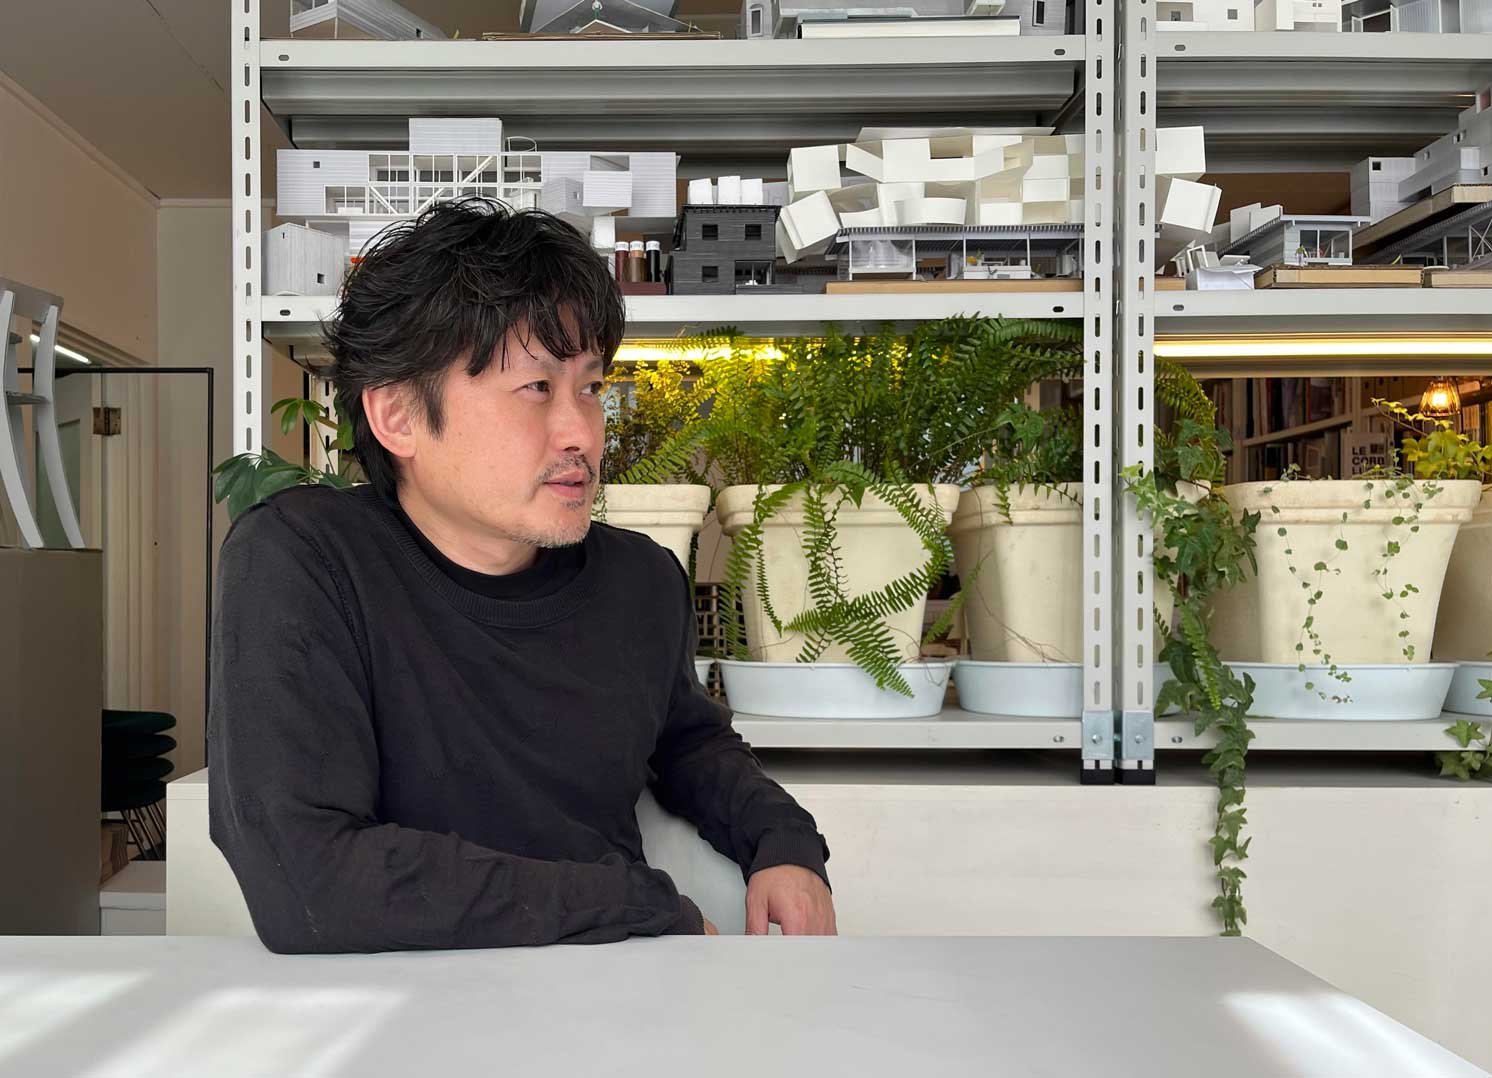 建築家の五十嵐淳さんの写真 | Make New Magazine「未来の定番」をつくるために、パナソニックのリアルな姿を伝えるメディア